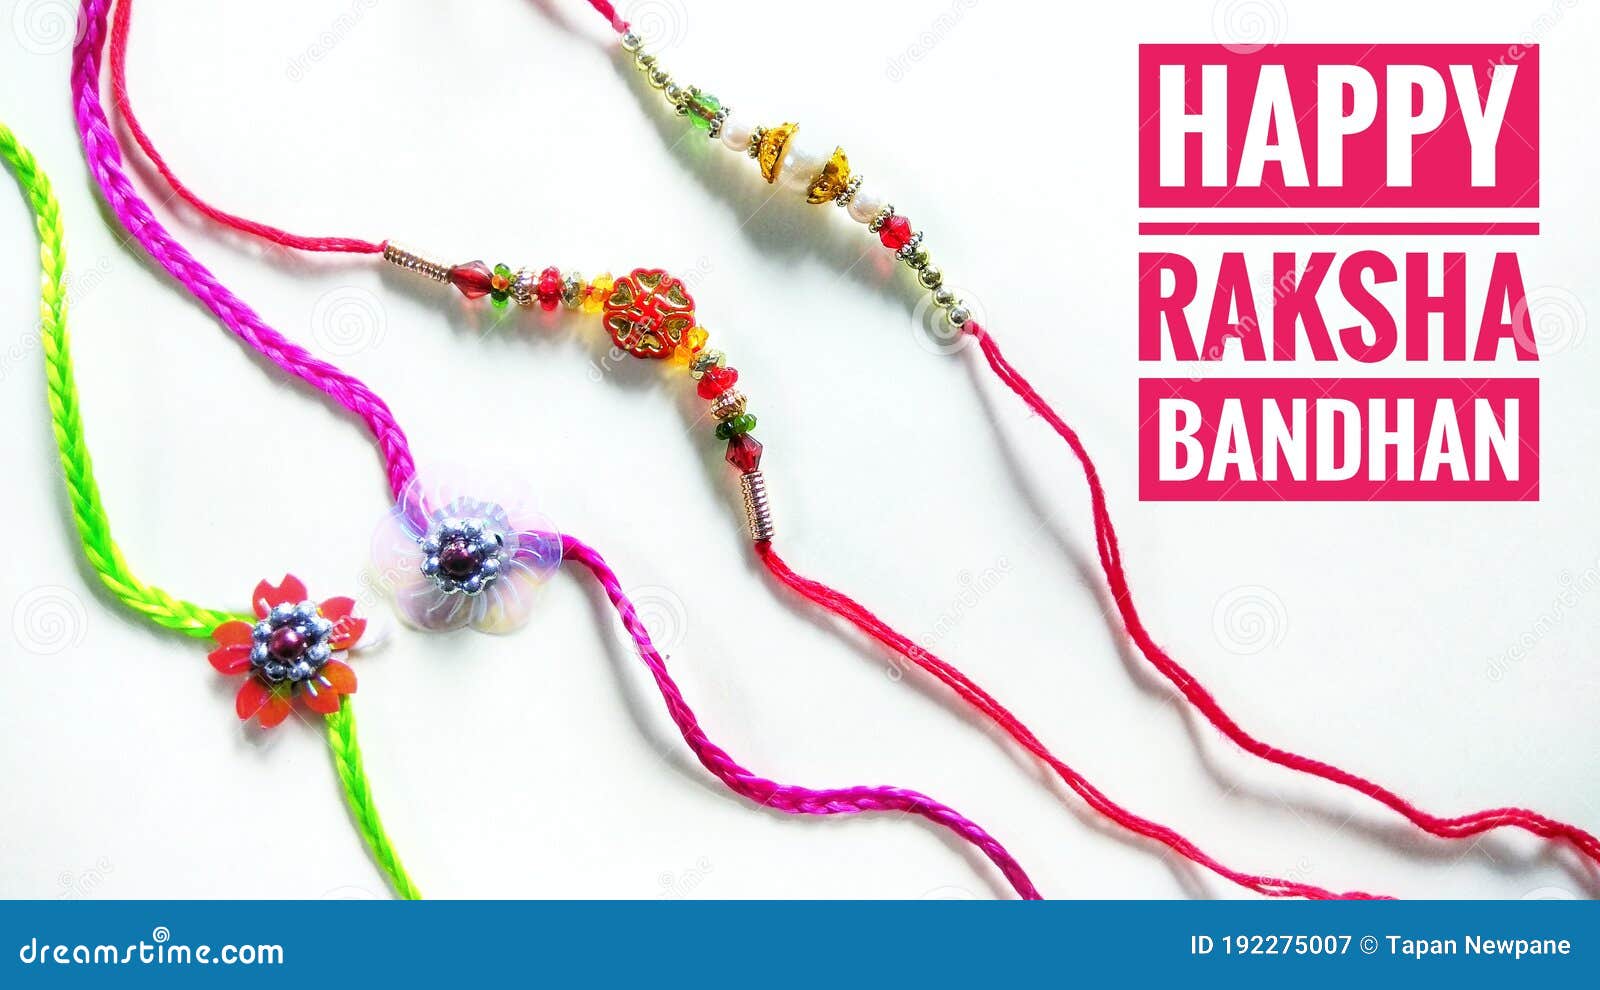 Happy Raksha Bandhan Greetings Card Design Template Stock Image ...